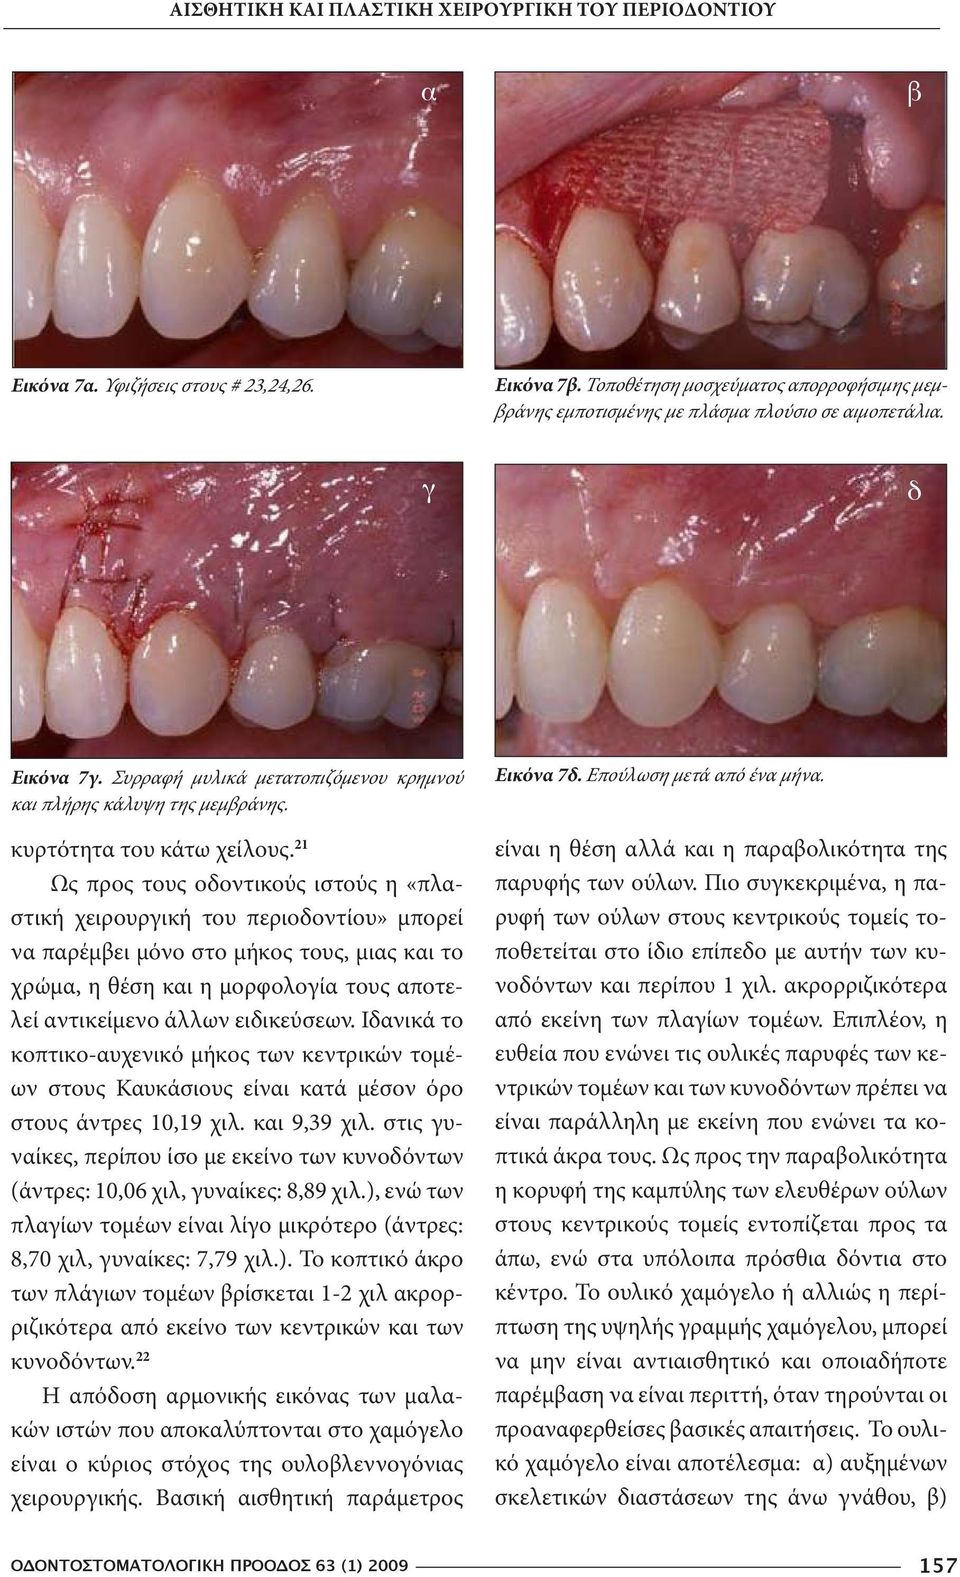 21 Ως προς τους οδοντικούς ιστούς η «πλαστική χειρουργική του περιοδοντίου» μπορεί να παρέμβει μόνο στο μήκος τους, μιας και το χρώμα, η θέση και η μορφολογία τους αποτελεί αντικείμενο άλλων